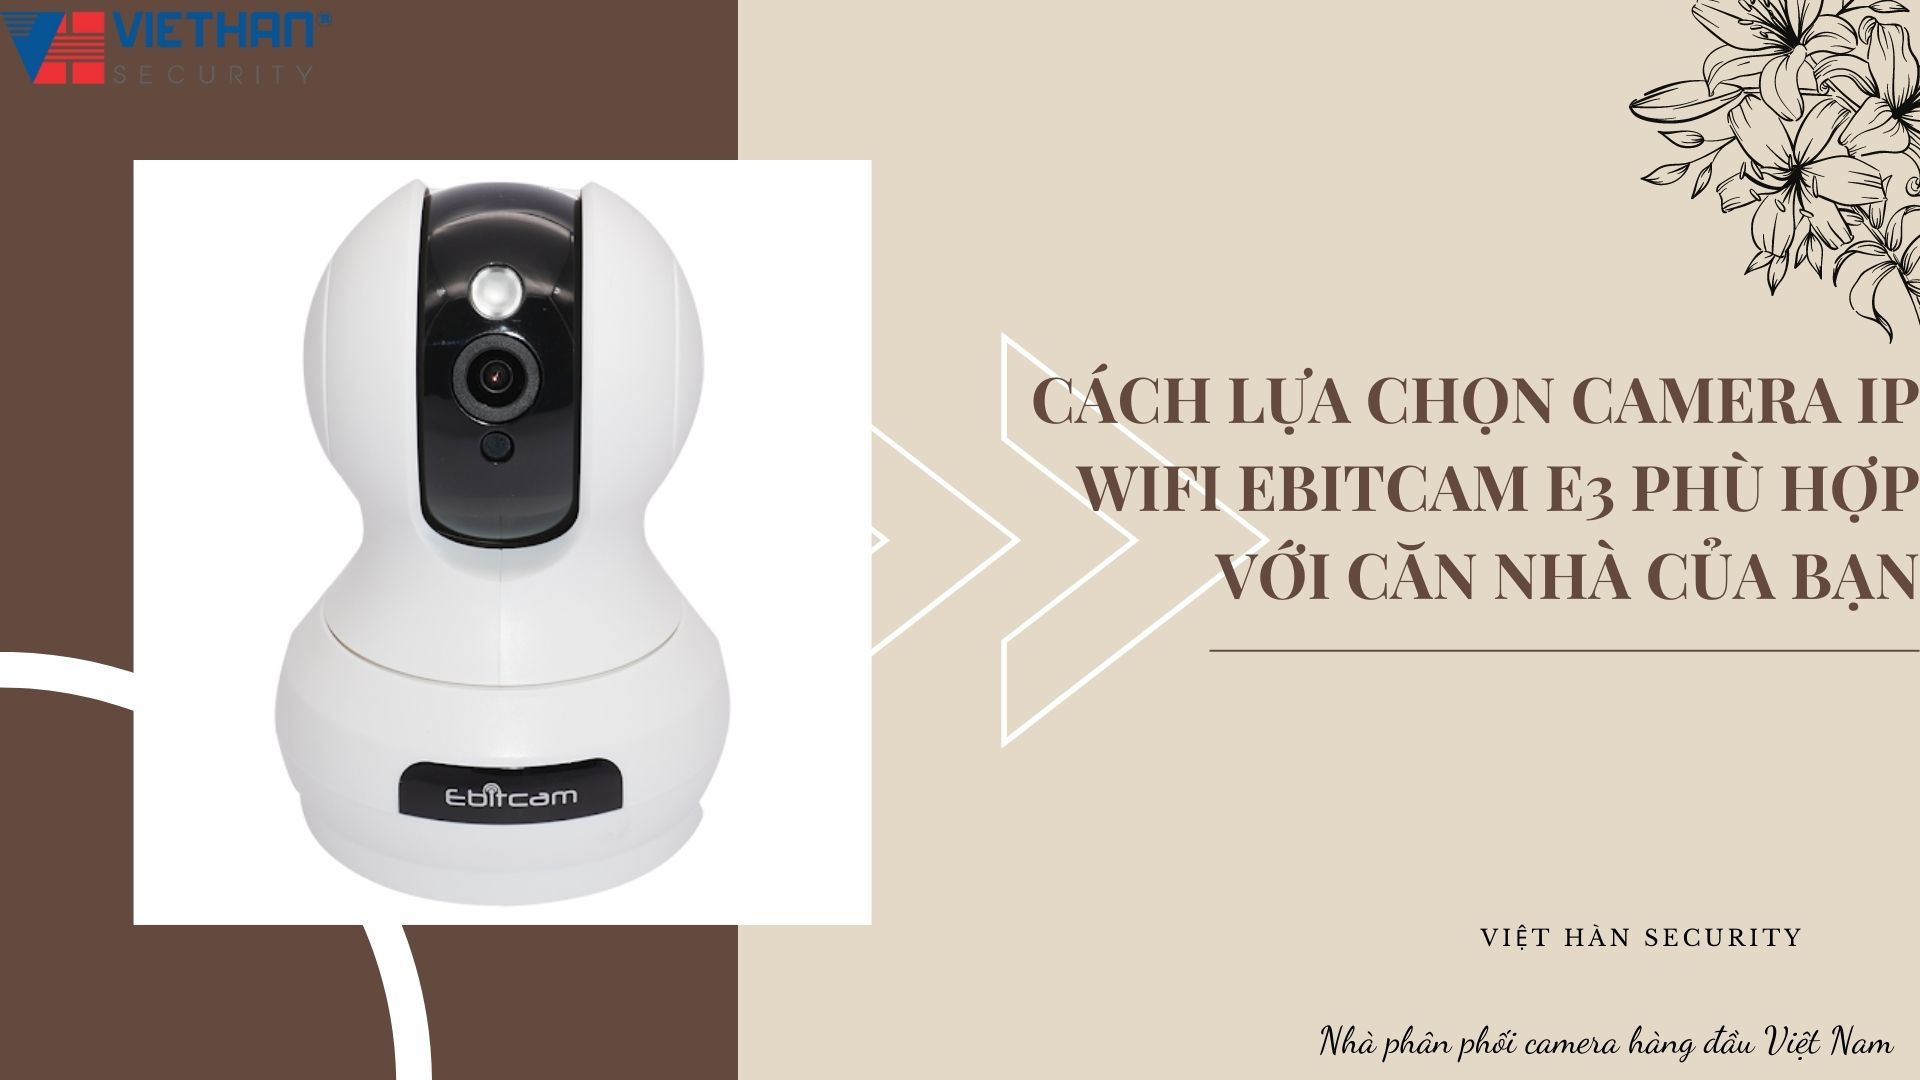 Cách lựa chọn Camera IP Wifi EbitCam E3 phù hợp với căn nhà của bạn